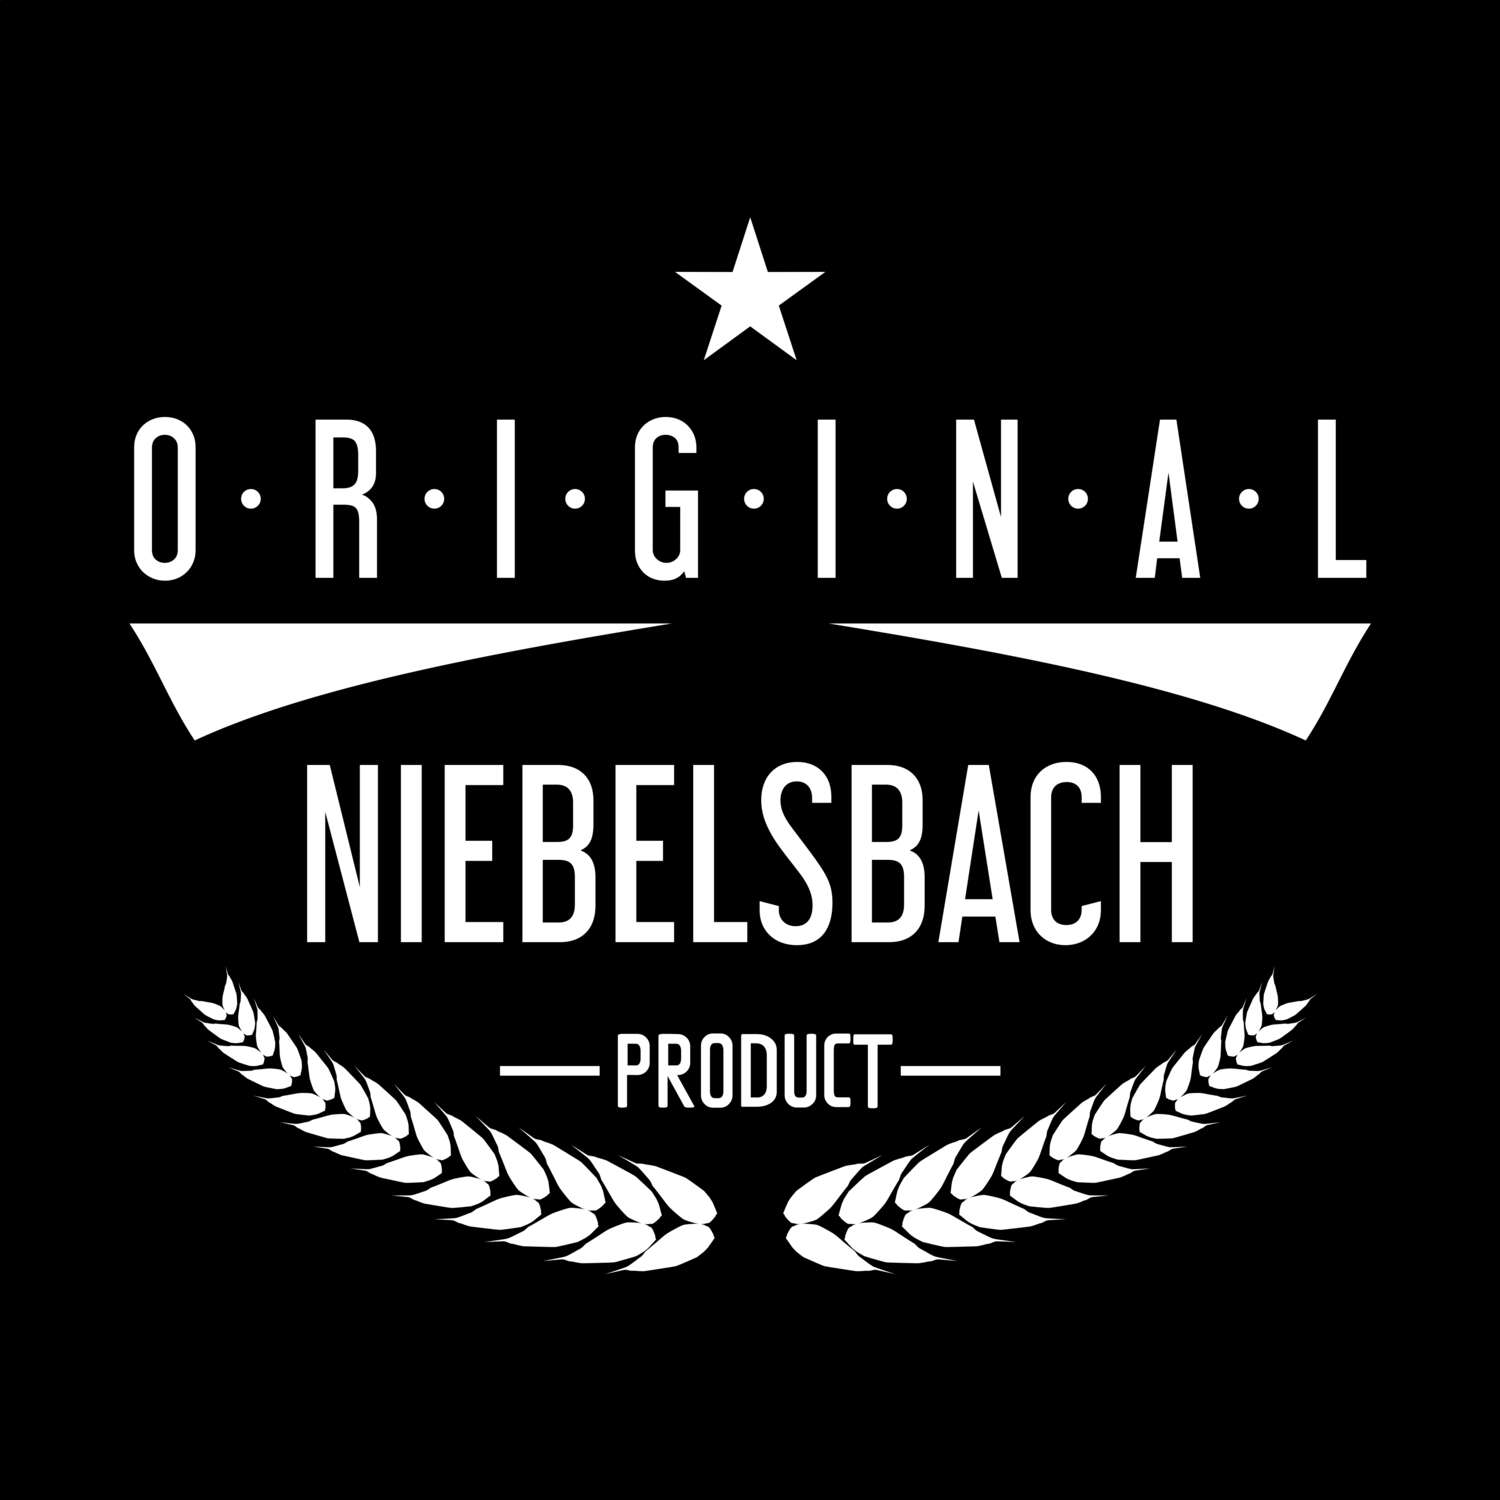 Niebelsbach T-Shirt »Original Product«